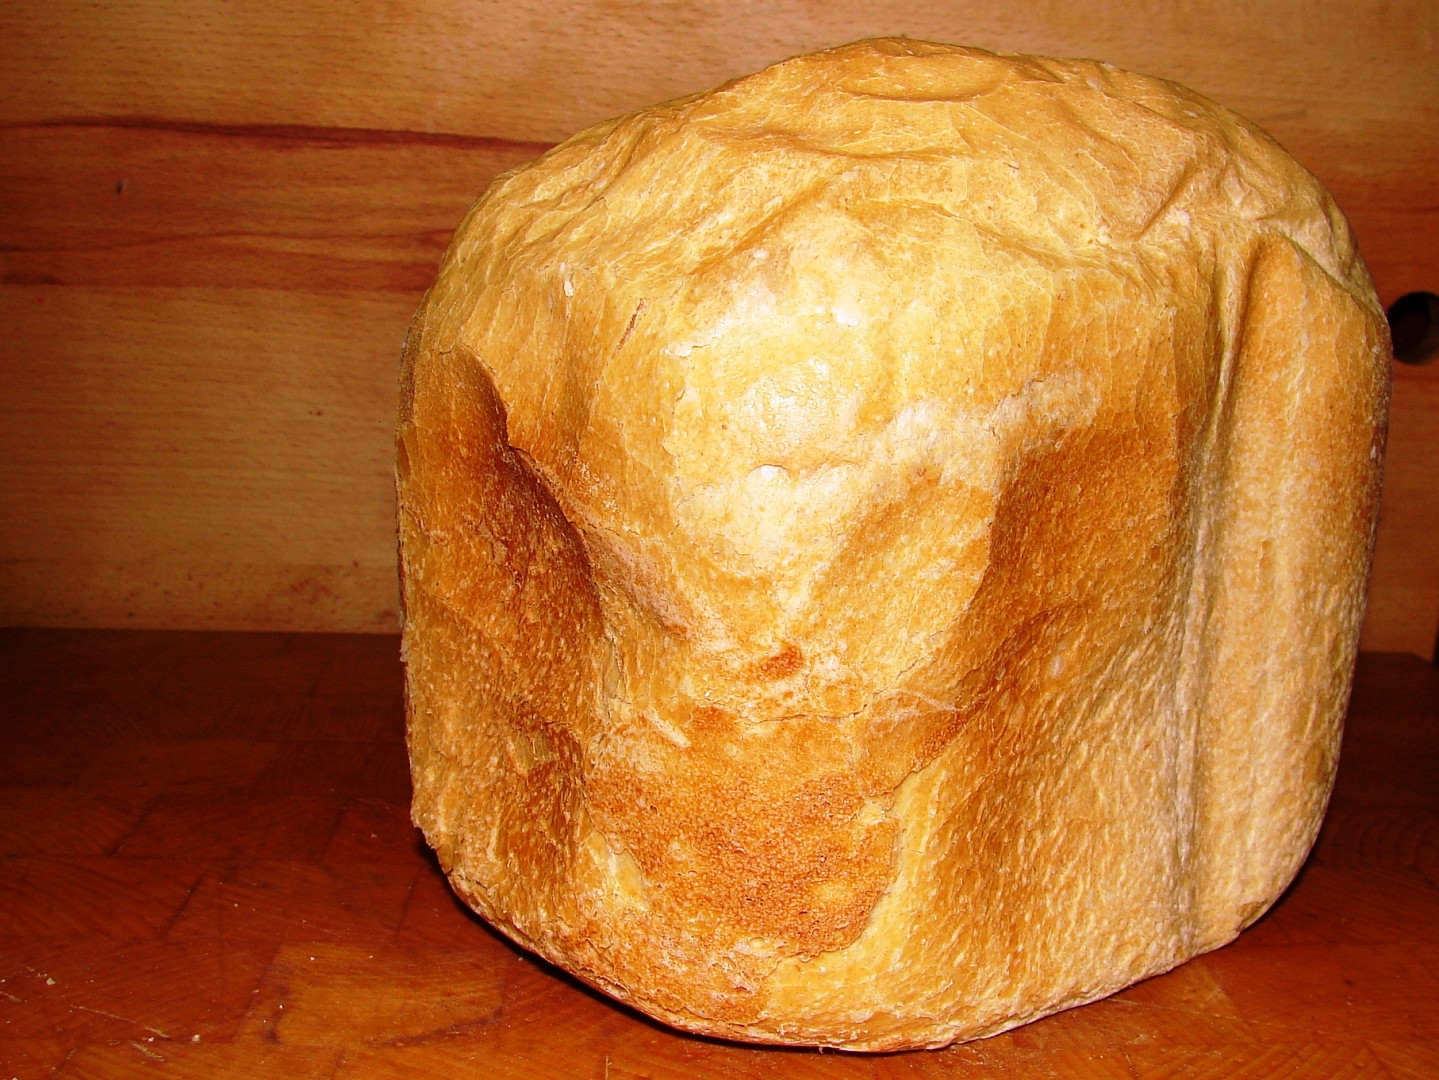 Francouzský chléb